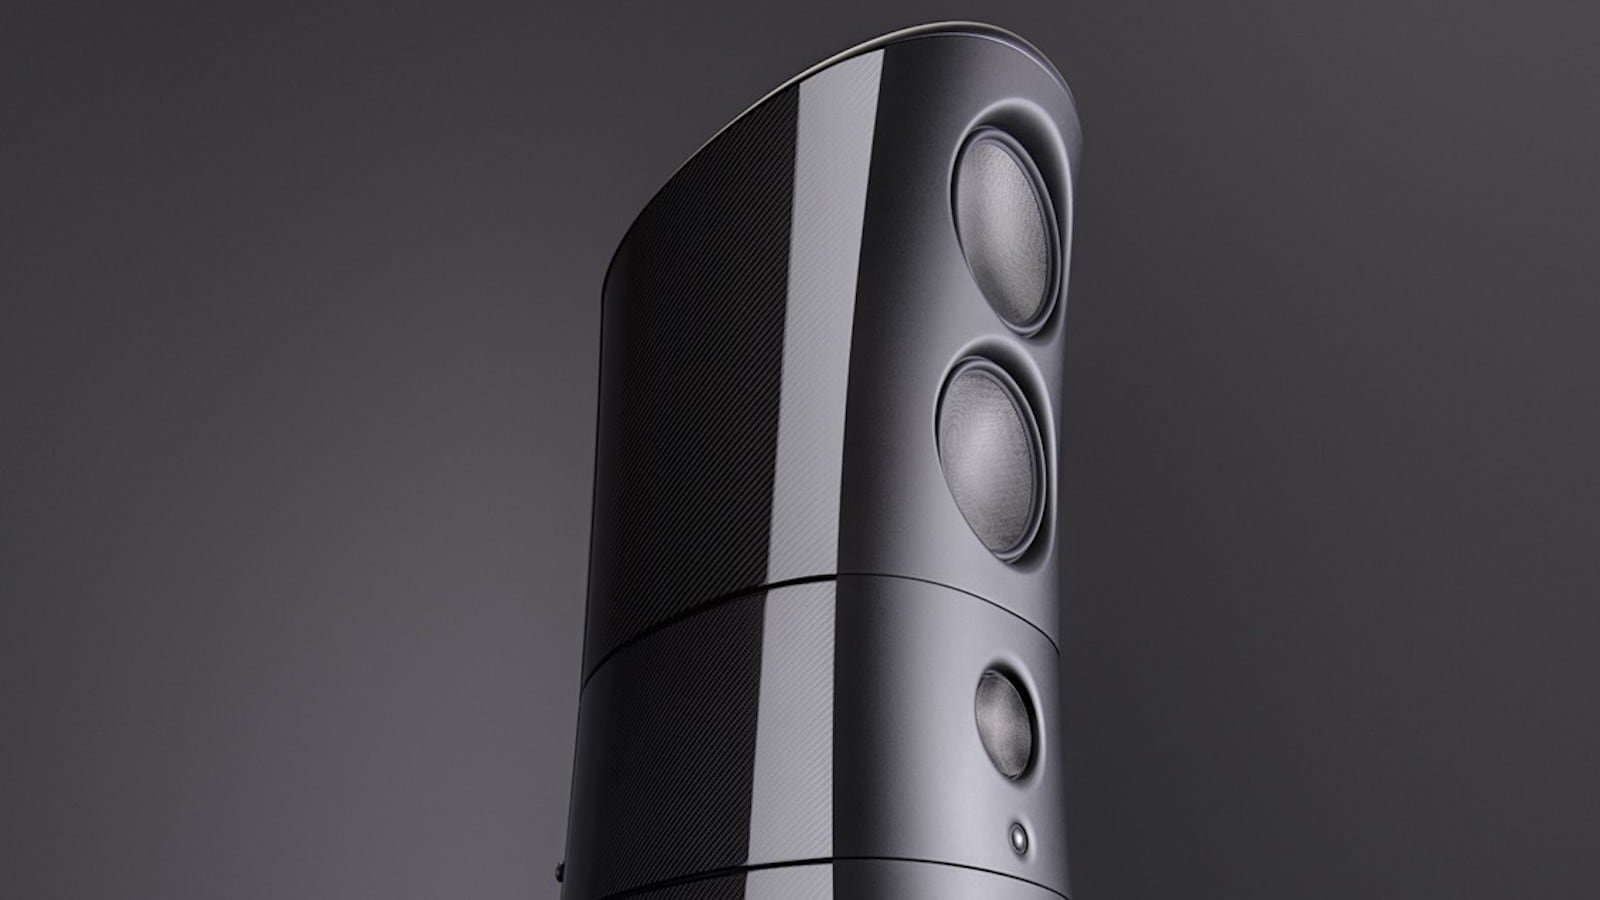 Magico M9 Carbon Fiber Loudspeaker limits vibrations while delivering excellent sound